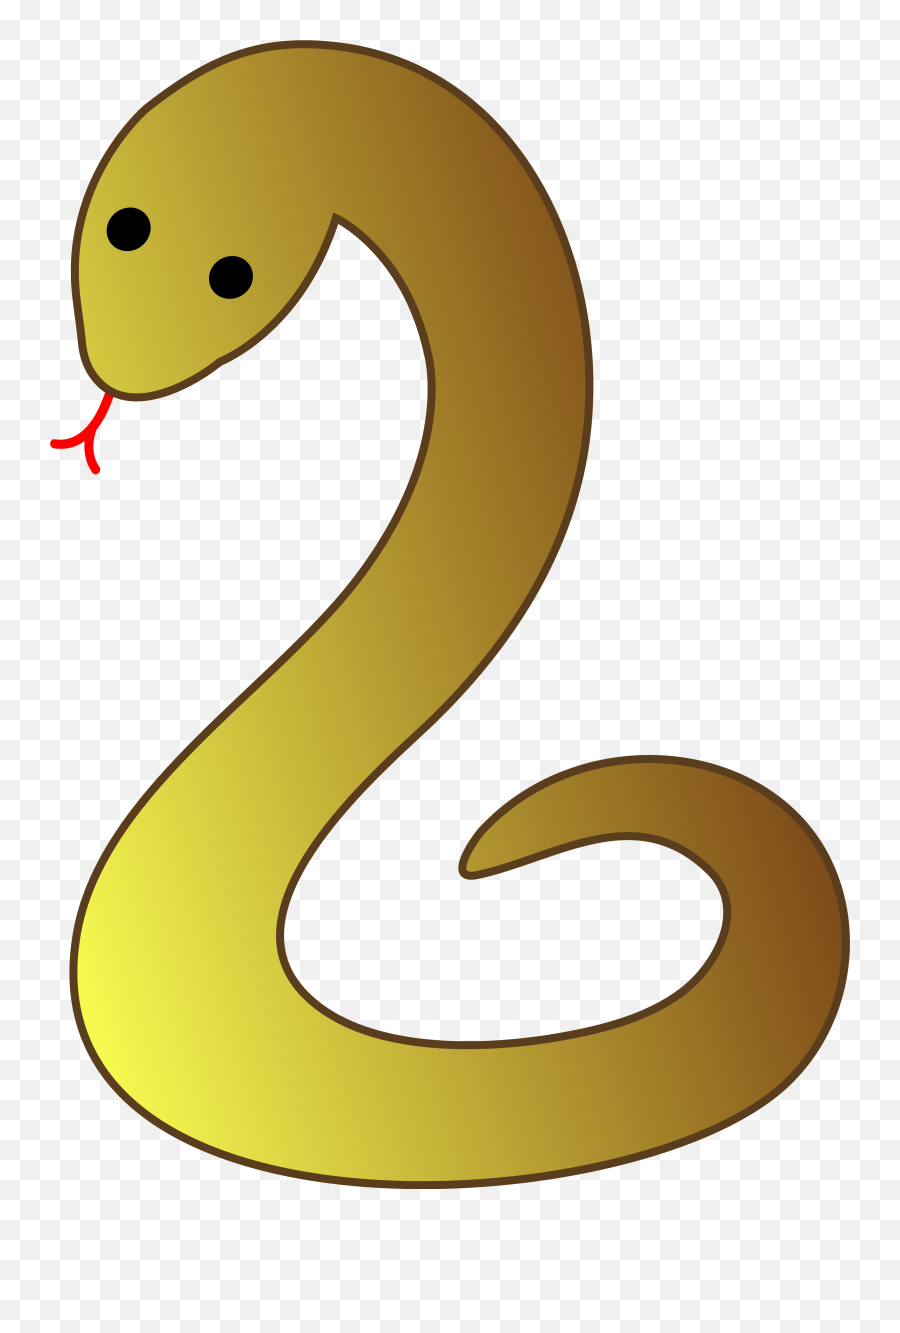 Free Cartoon Images Of Snakes Download - Snake Transparent Clipart Emoji,Adorable Snake Emotion